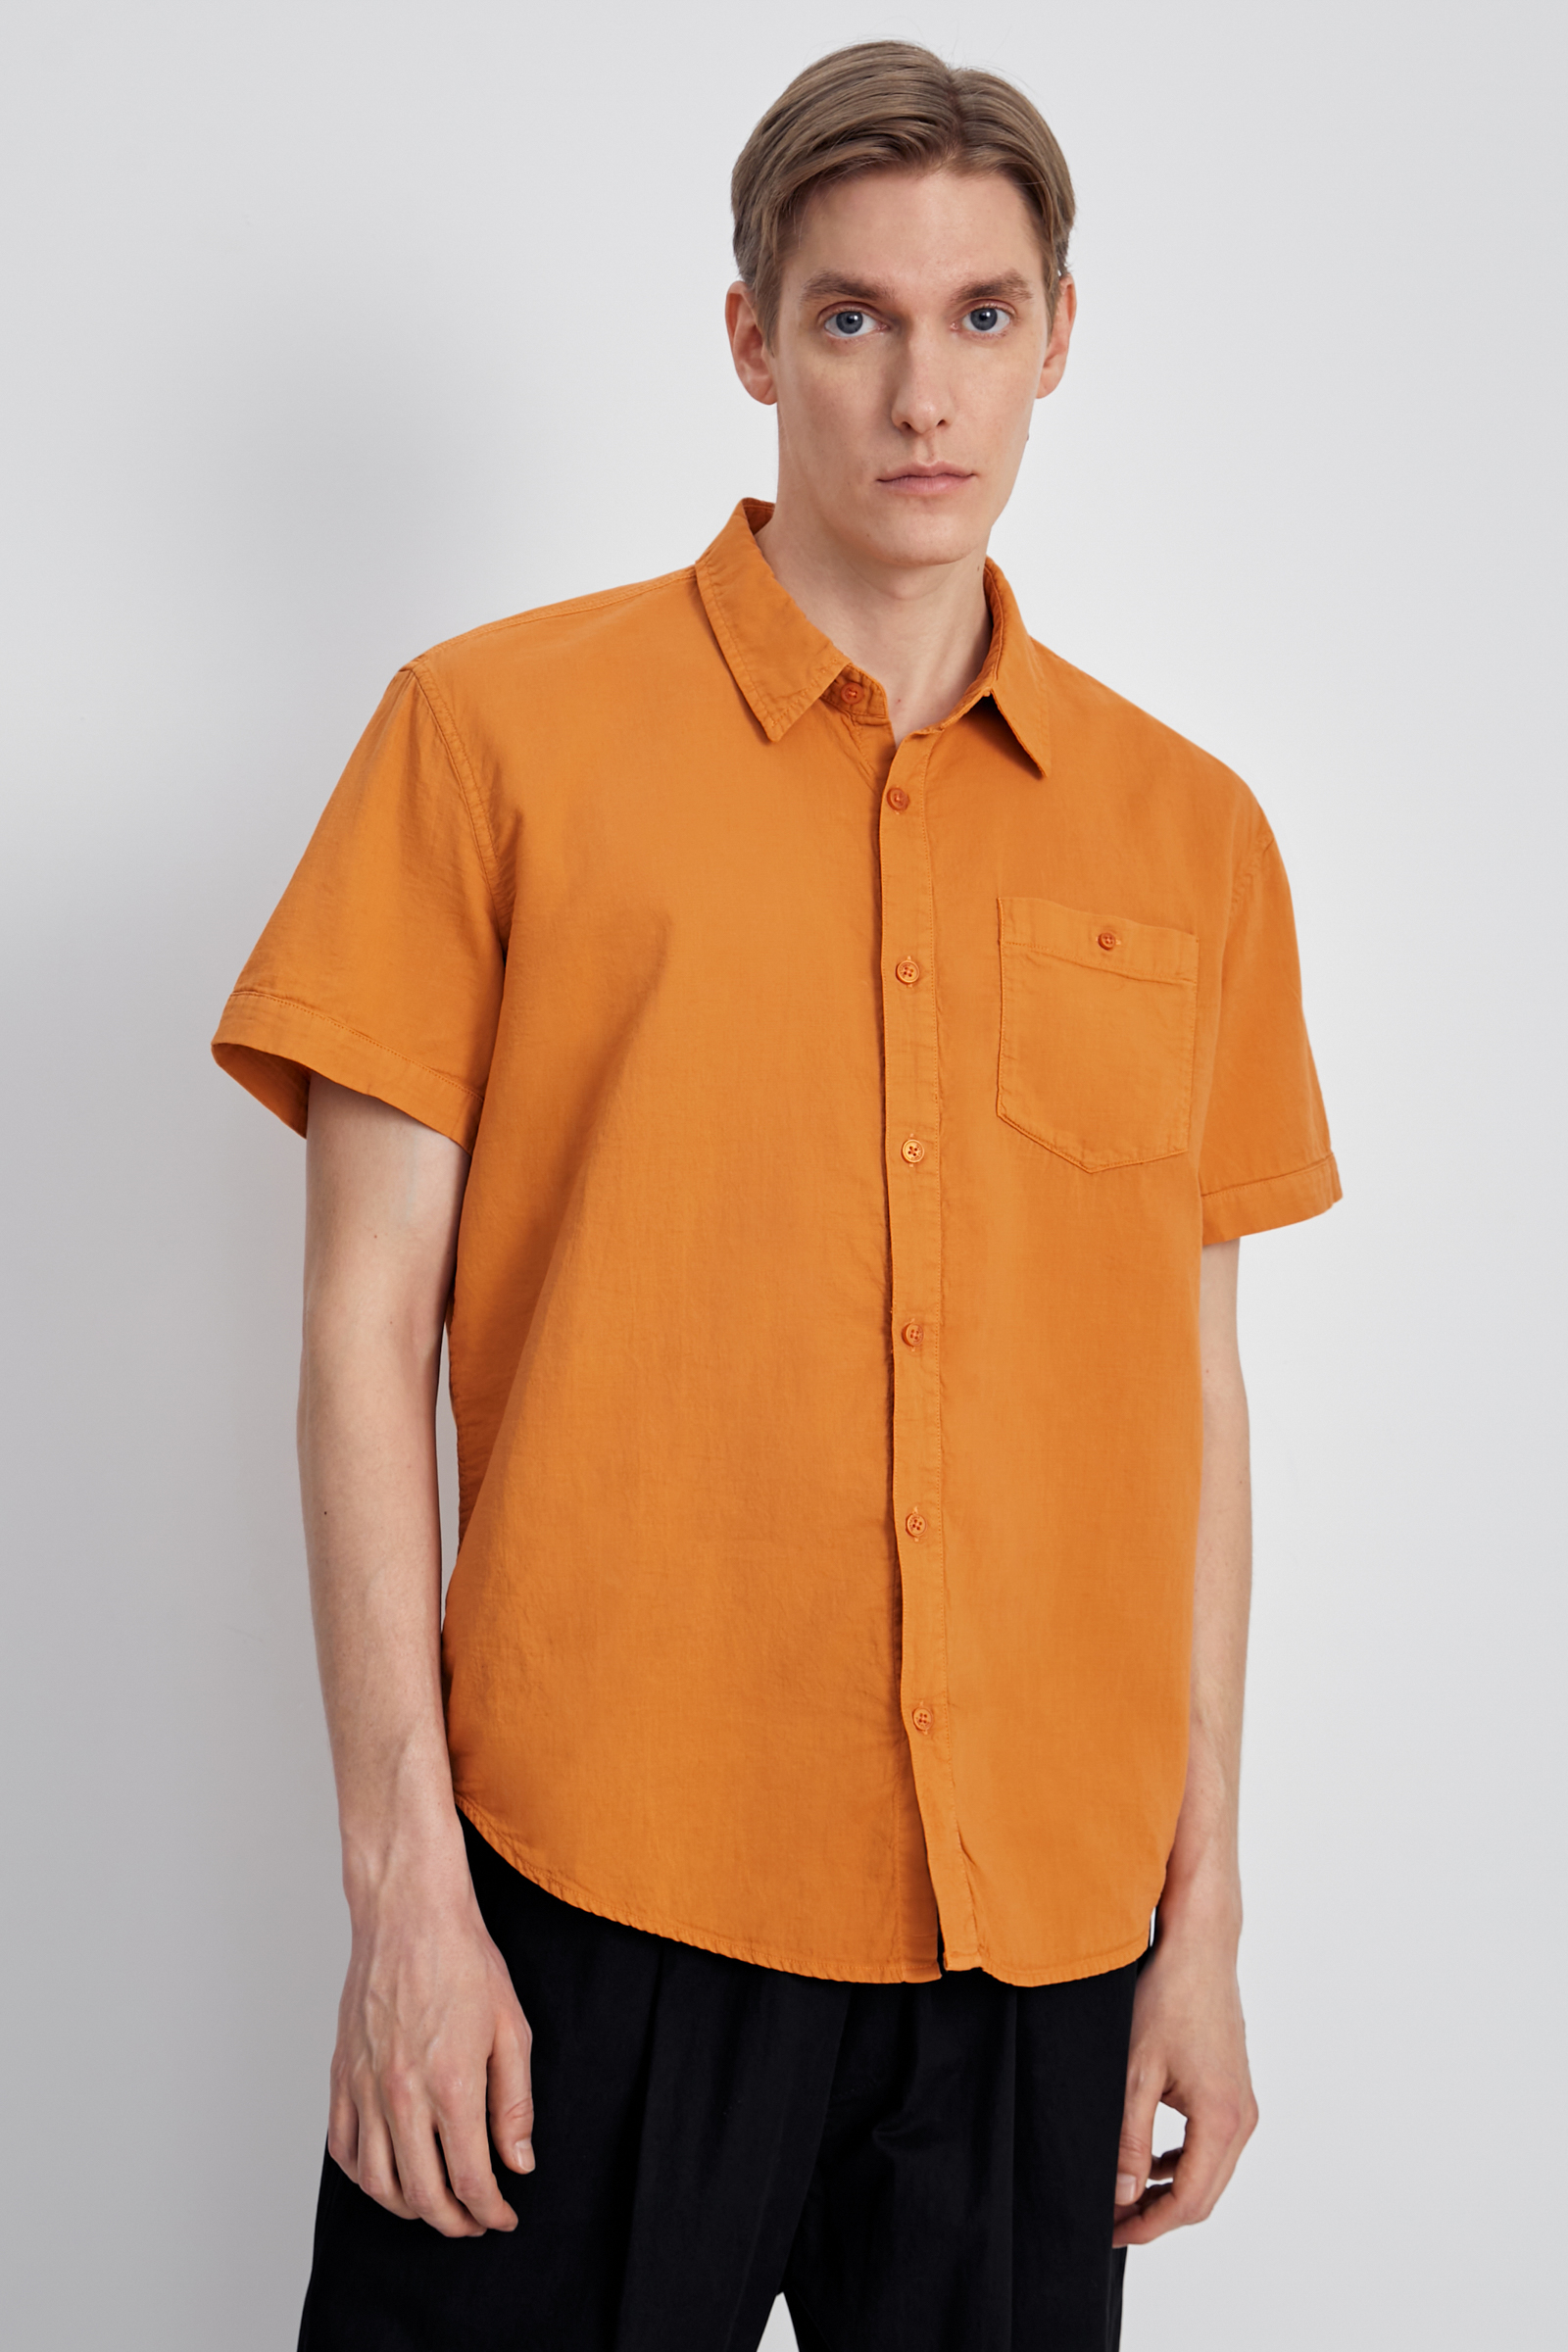 Рубашка мужская Finn Flare FSC21027 оранжевая L